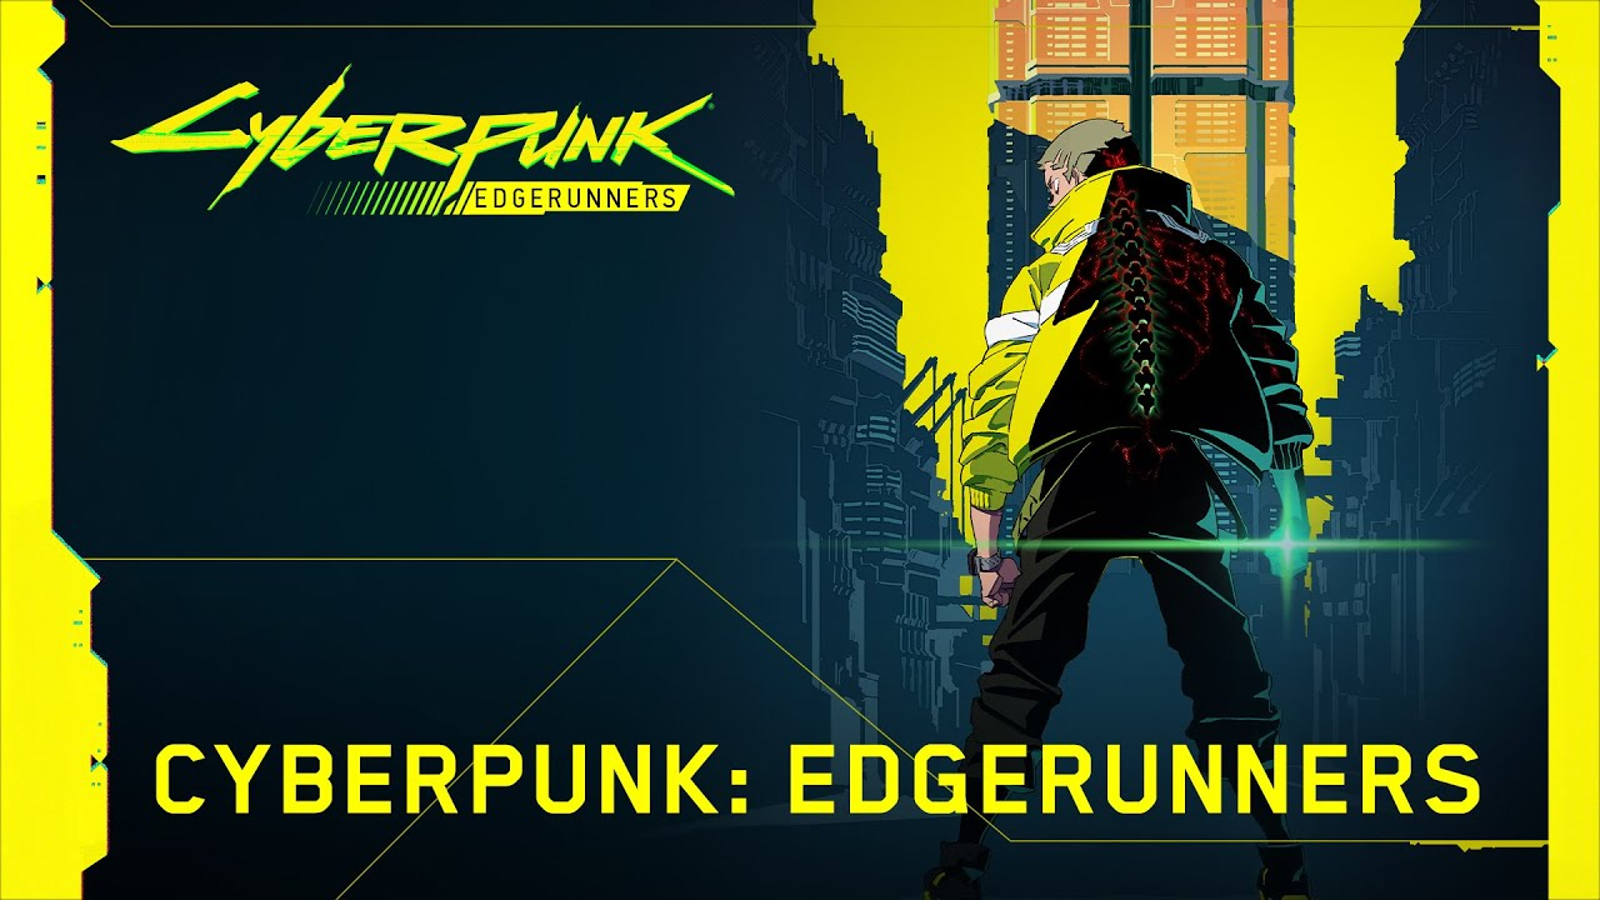 Cyberpunk: Edgerunners - Review - Anime News Network